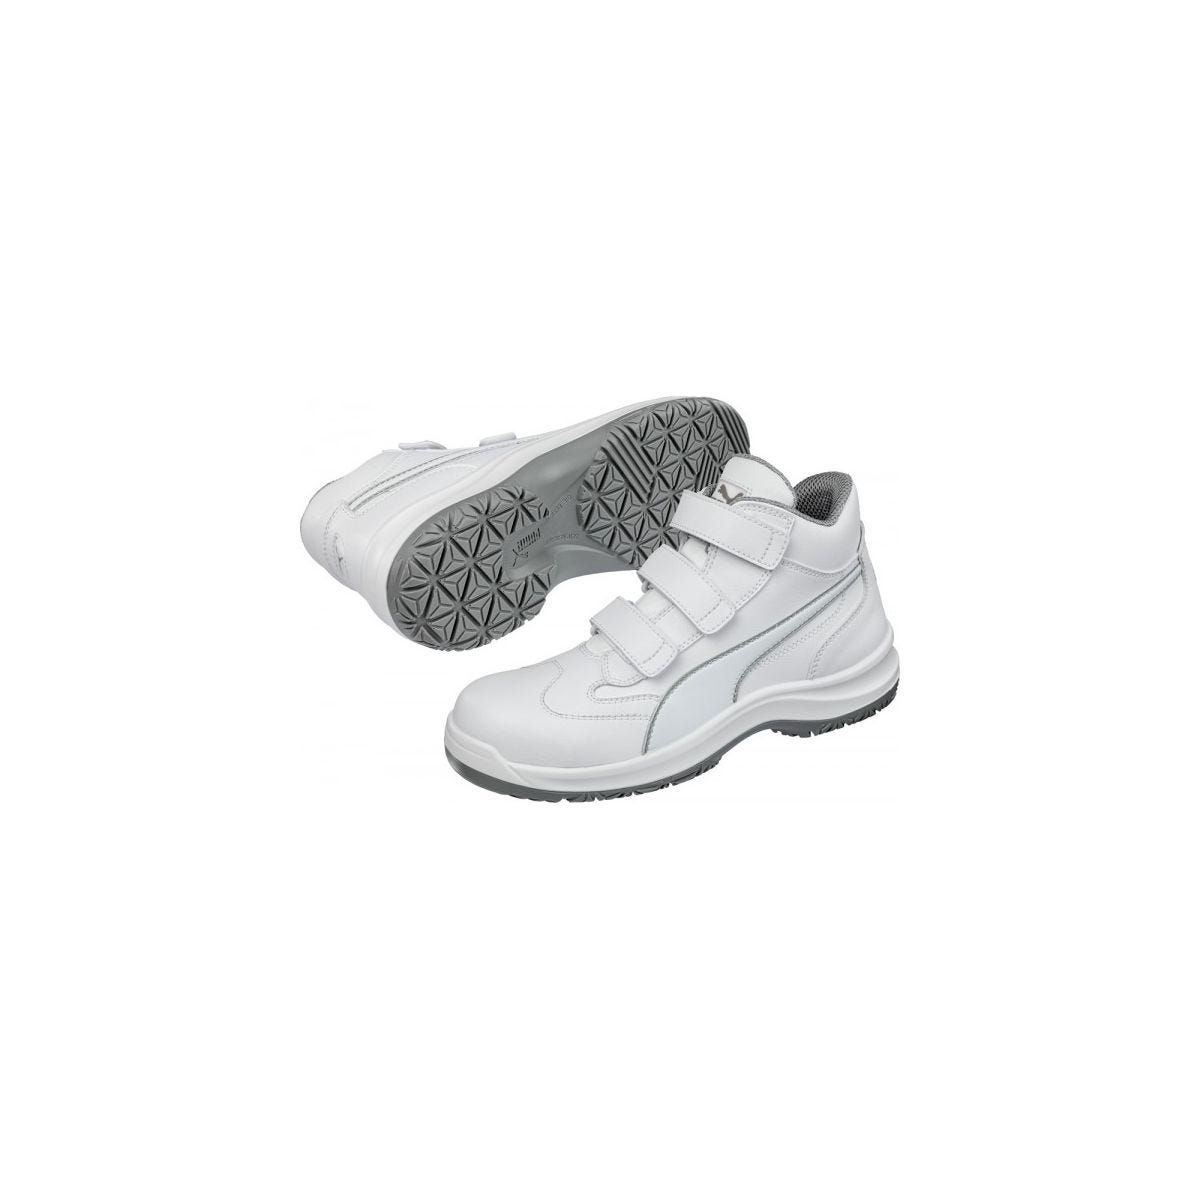 Chaussures de sécurité Absolute Mid S2 Blanc - Puma - Taille 44 2